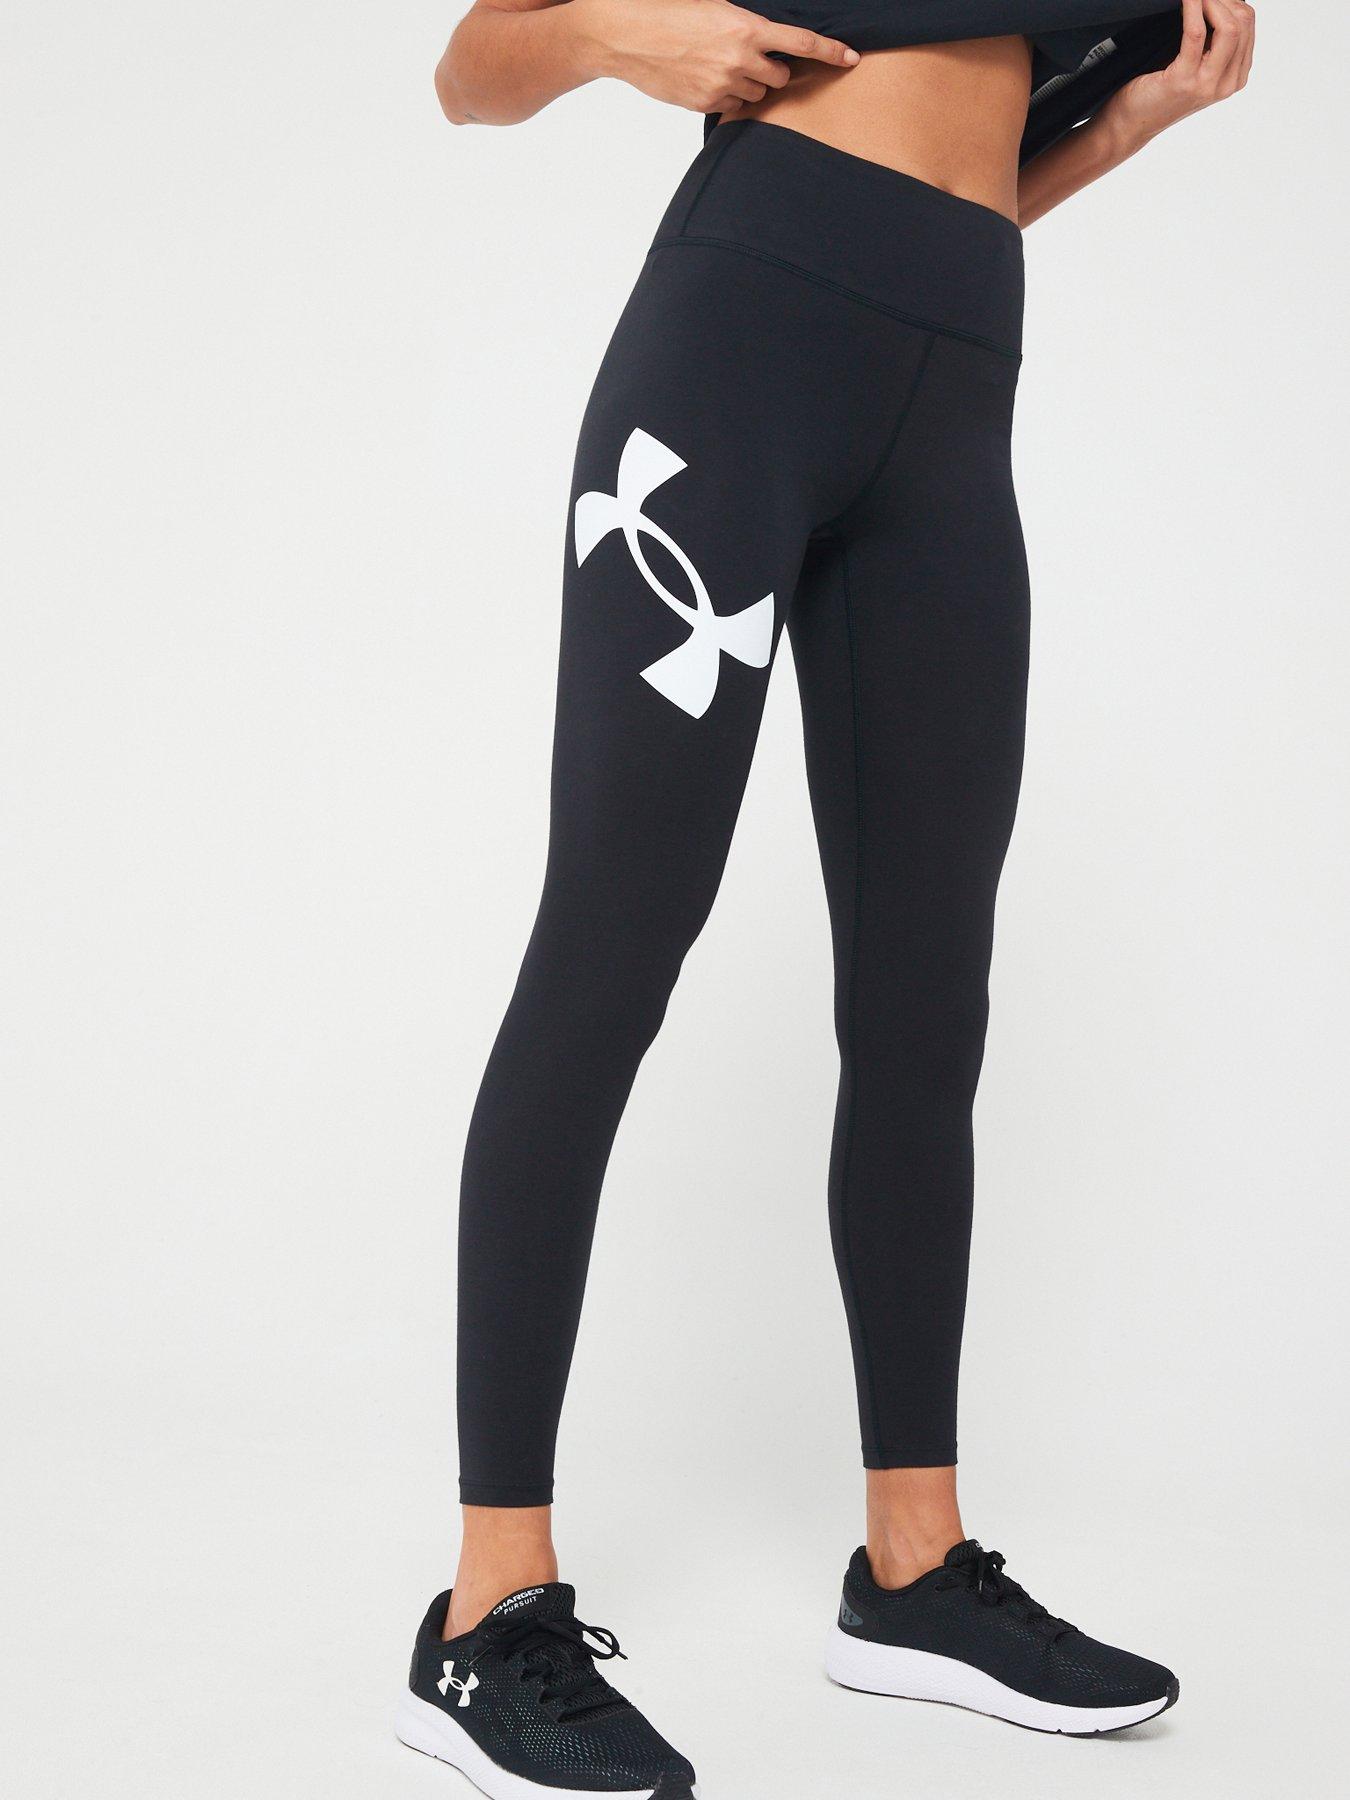 Sport leggings for Women Under Armour Black XS - buy, price